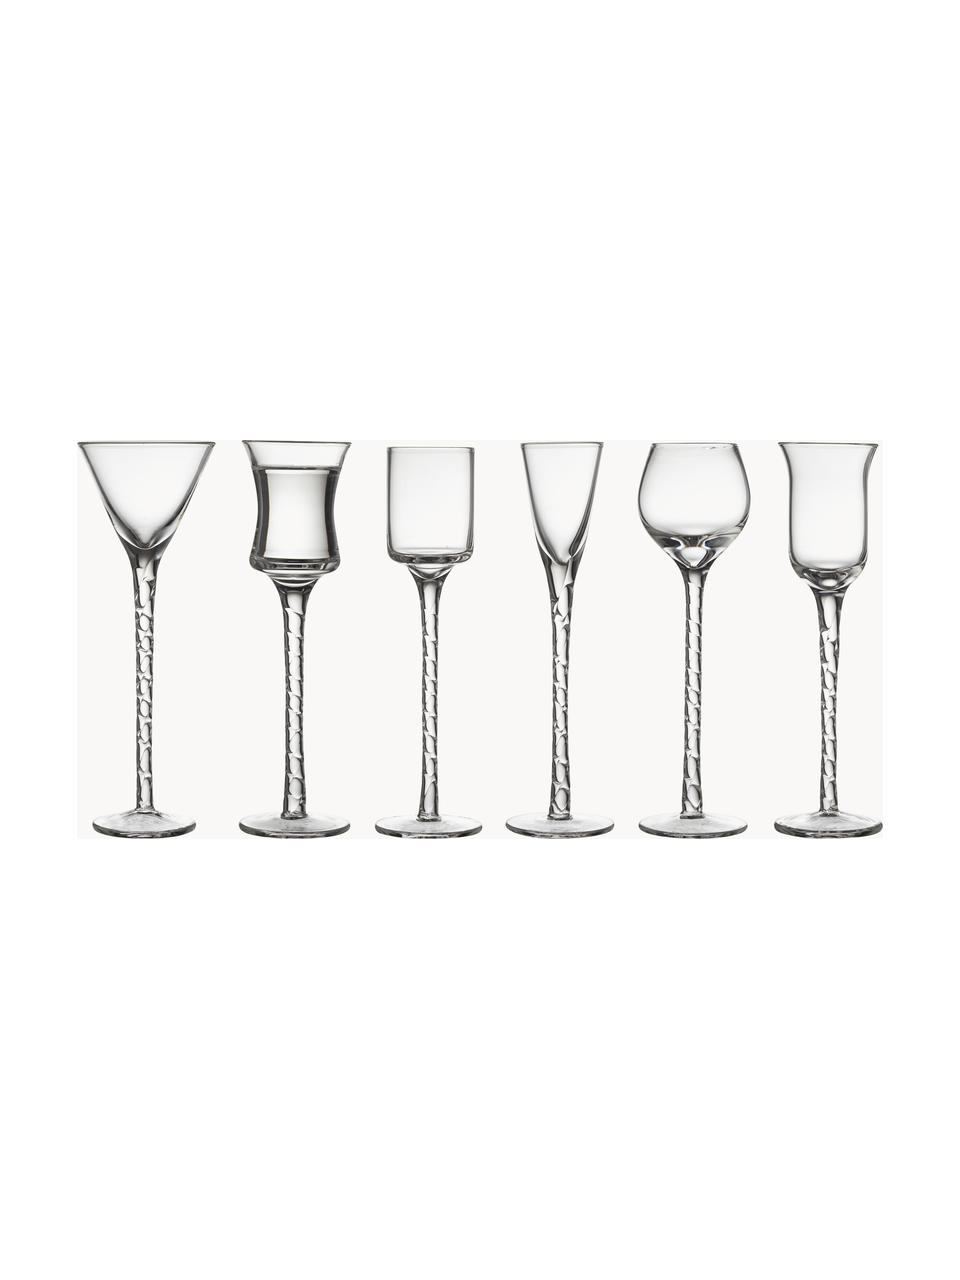 Set de vasos chupito soplados artesanalmente Rom, 6 uds., Vidrio, Transparente, Set de diferentes tamaños